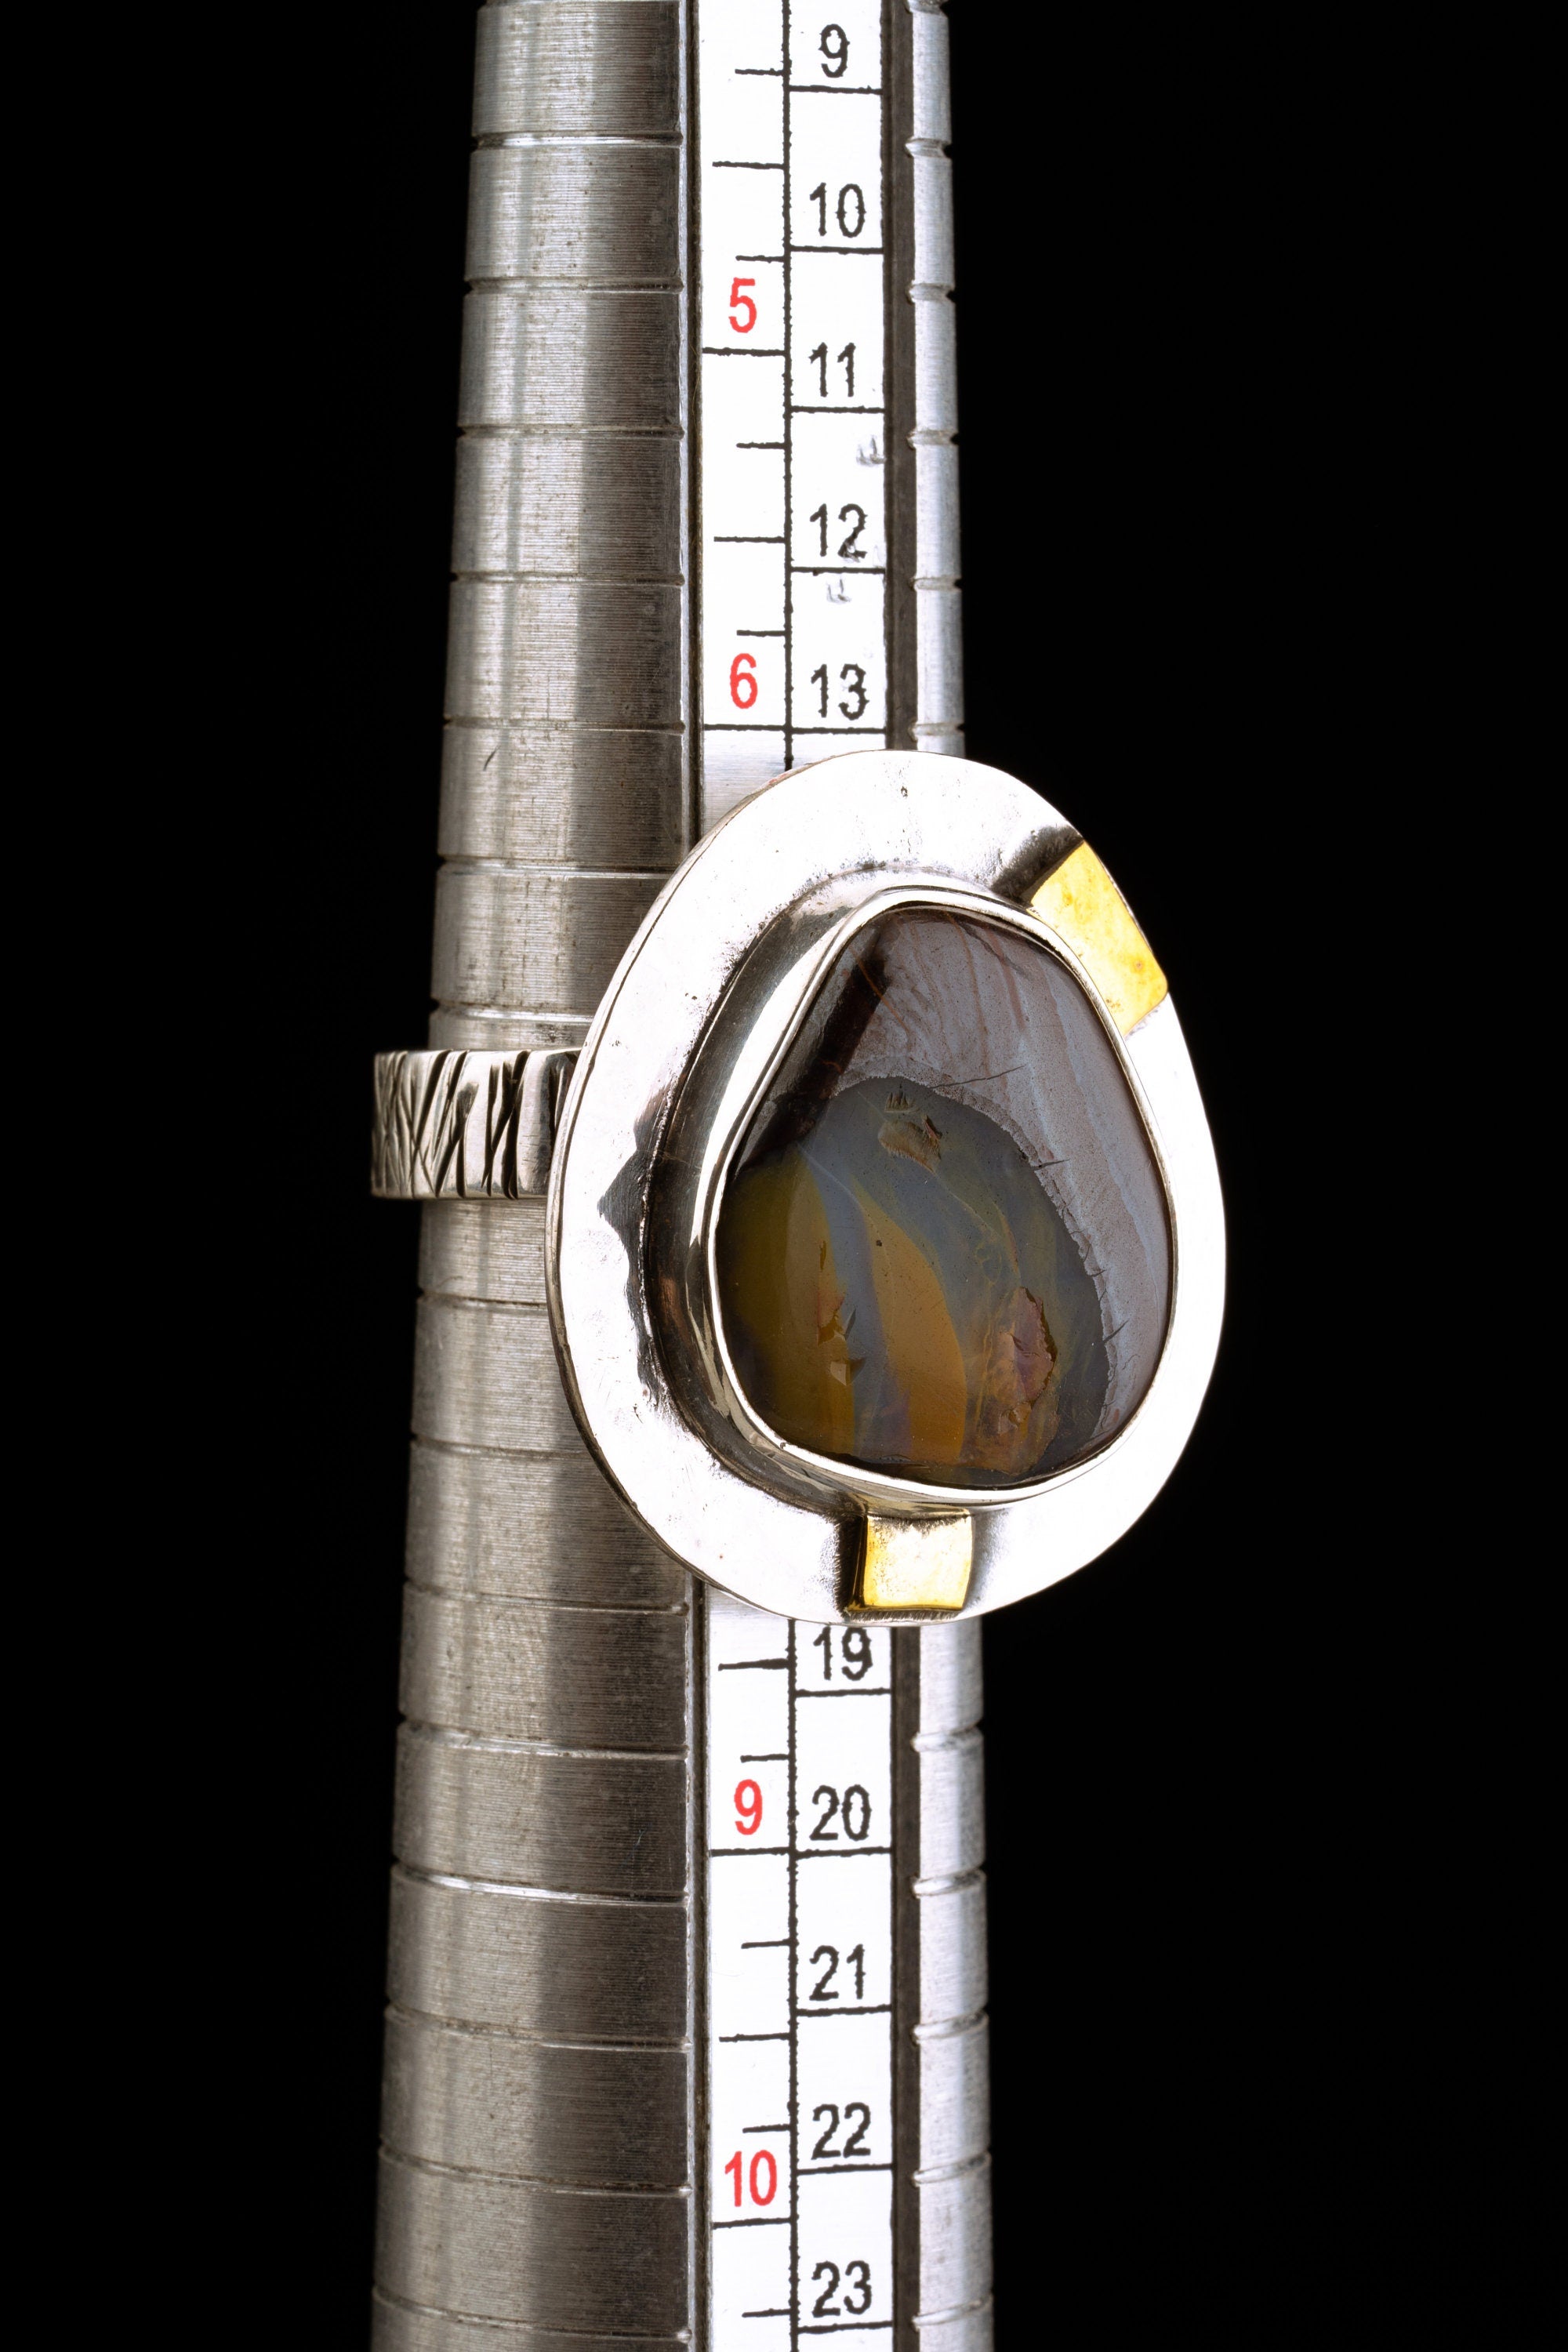 Ecliptic Radiance - Australian Boulder Opal - Unisex - Size 5-12 US - Large Adjustable Sterling Silver Ring